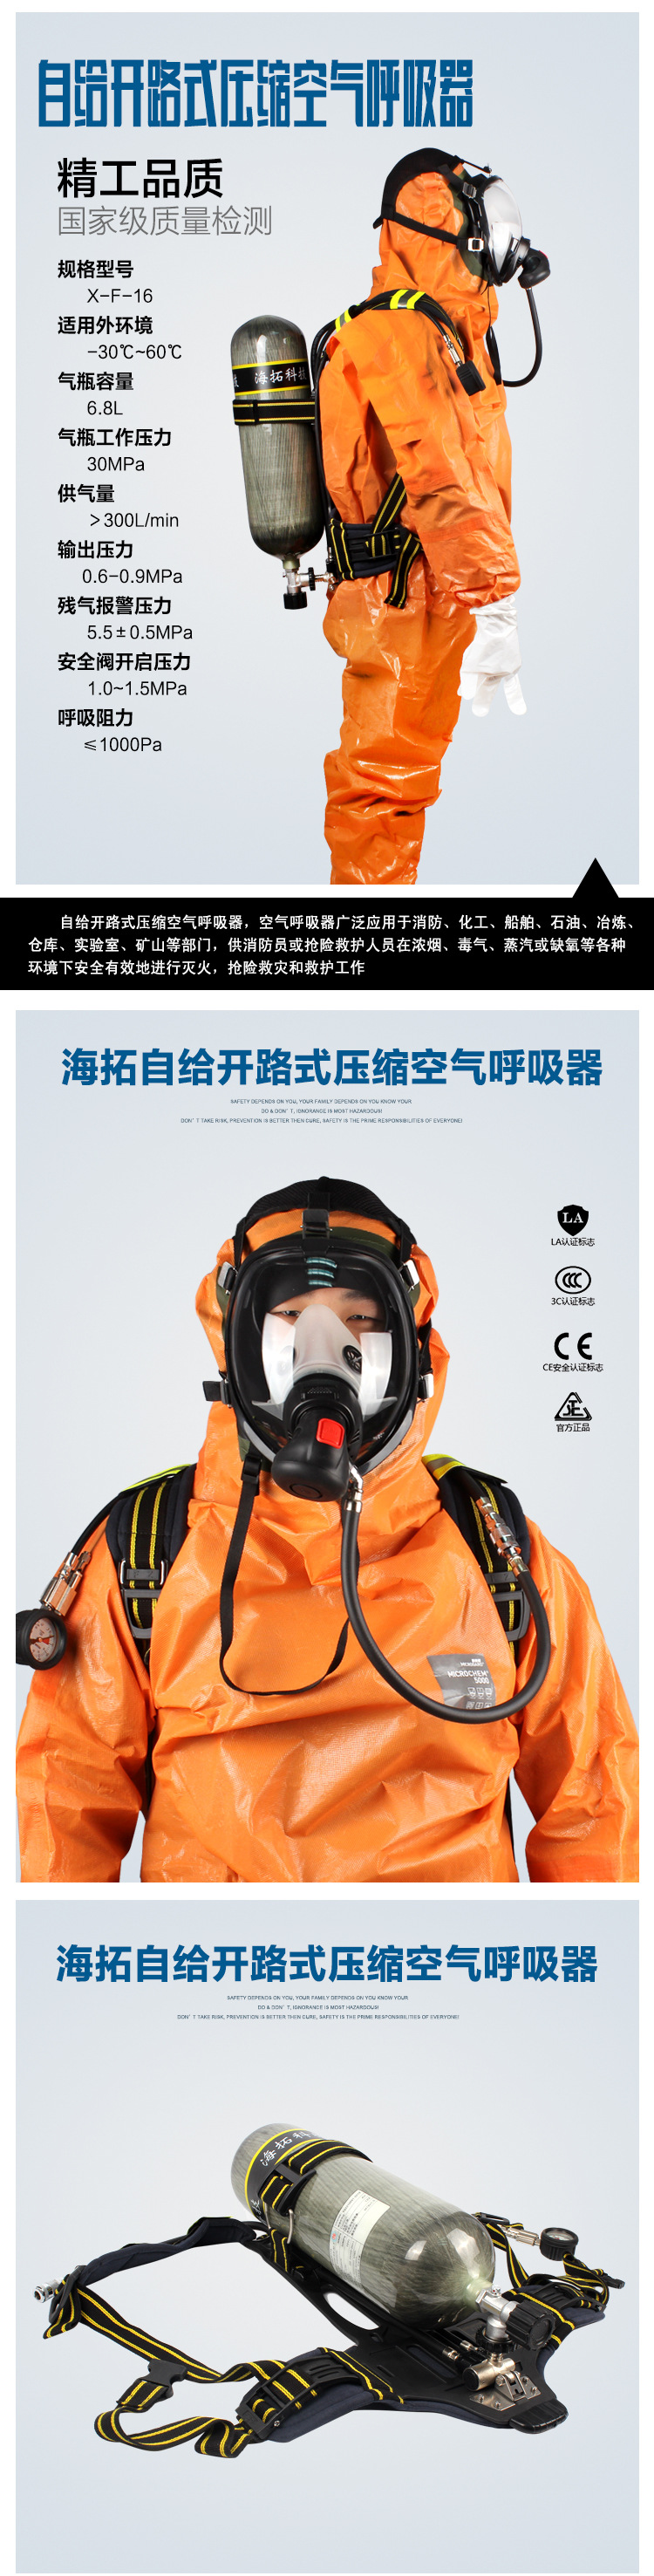 批发海拓X-F-20自给开路式安全急救6.8L碳纤维瓶正压式空气呼吸器 海拓空气呼吸器图片